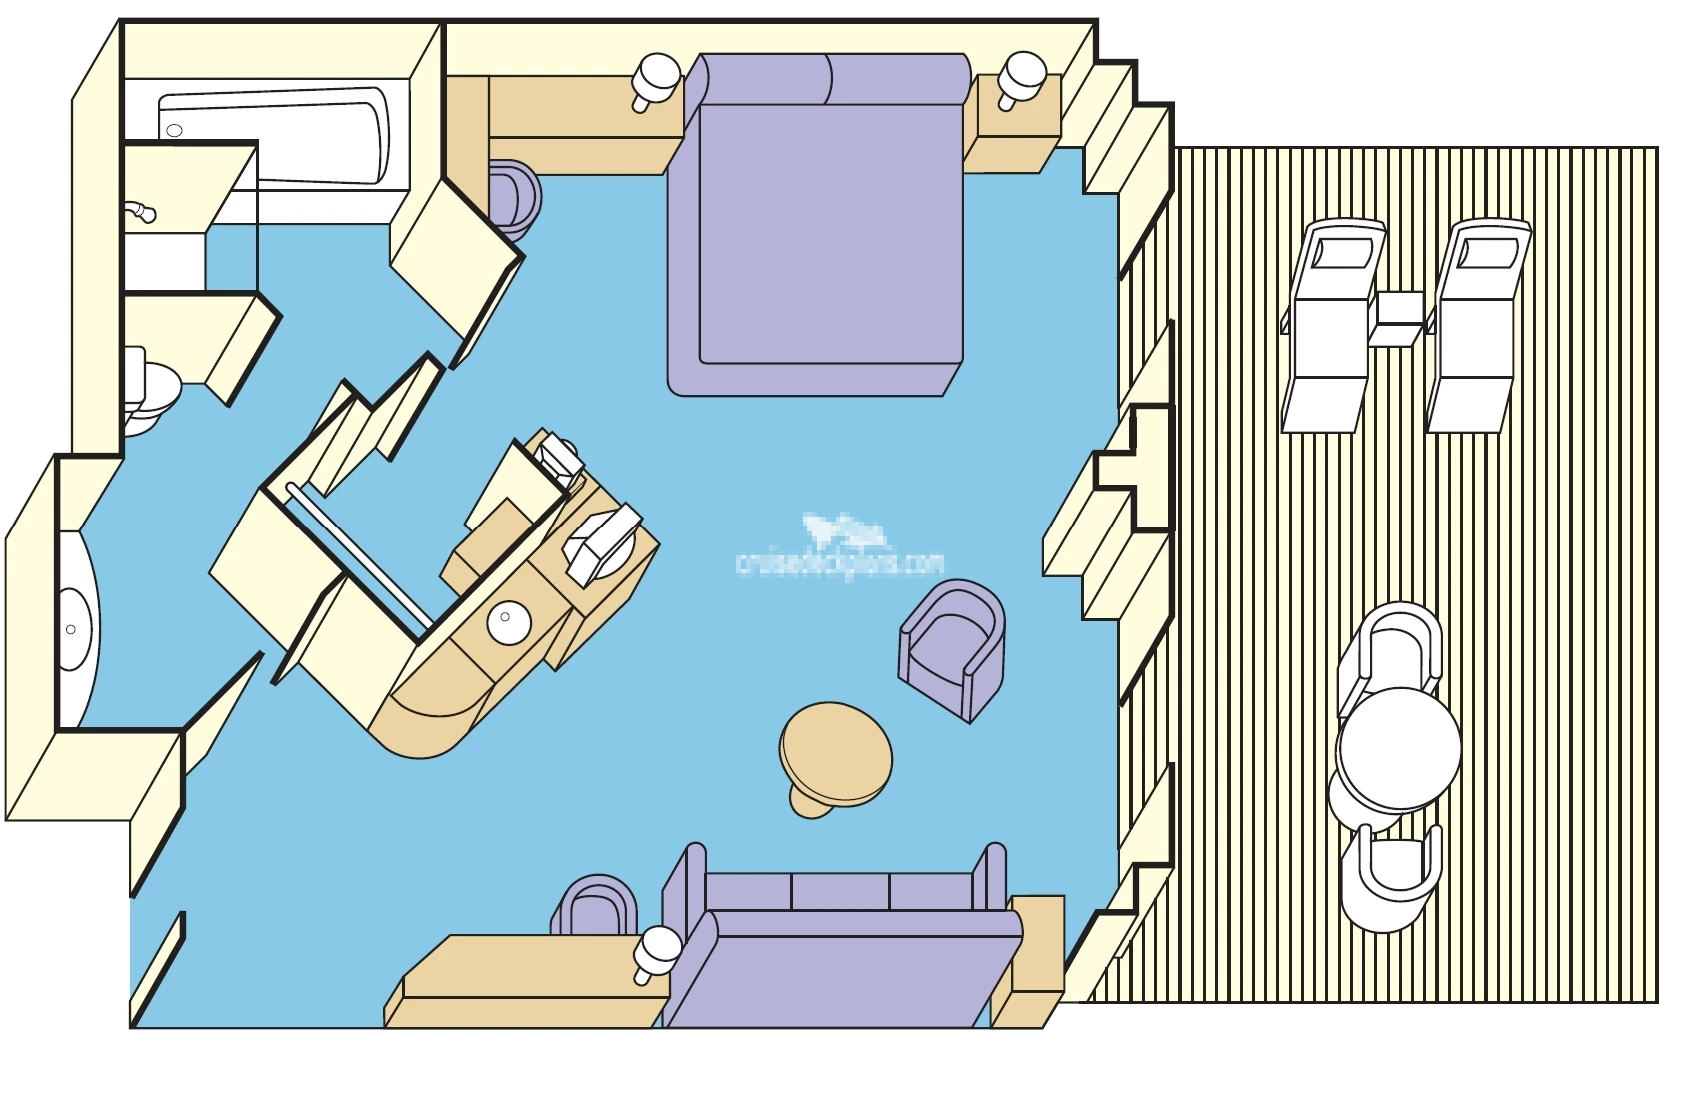 Pacific Encounter Suite cabin floor plan